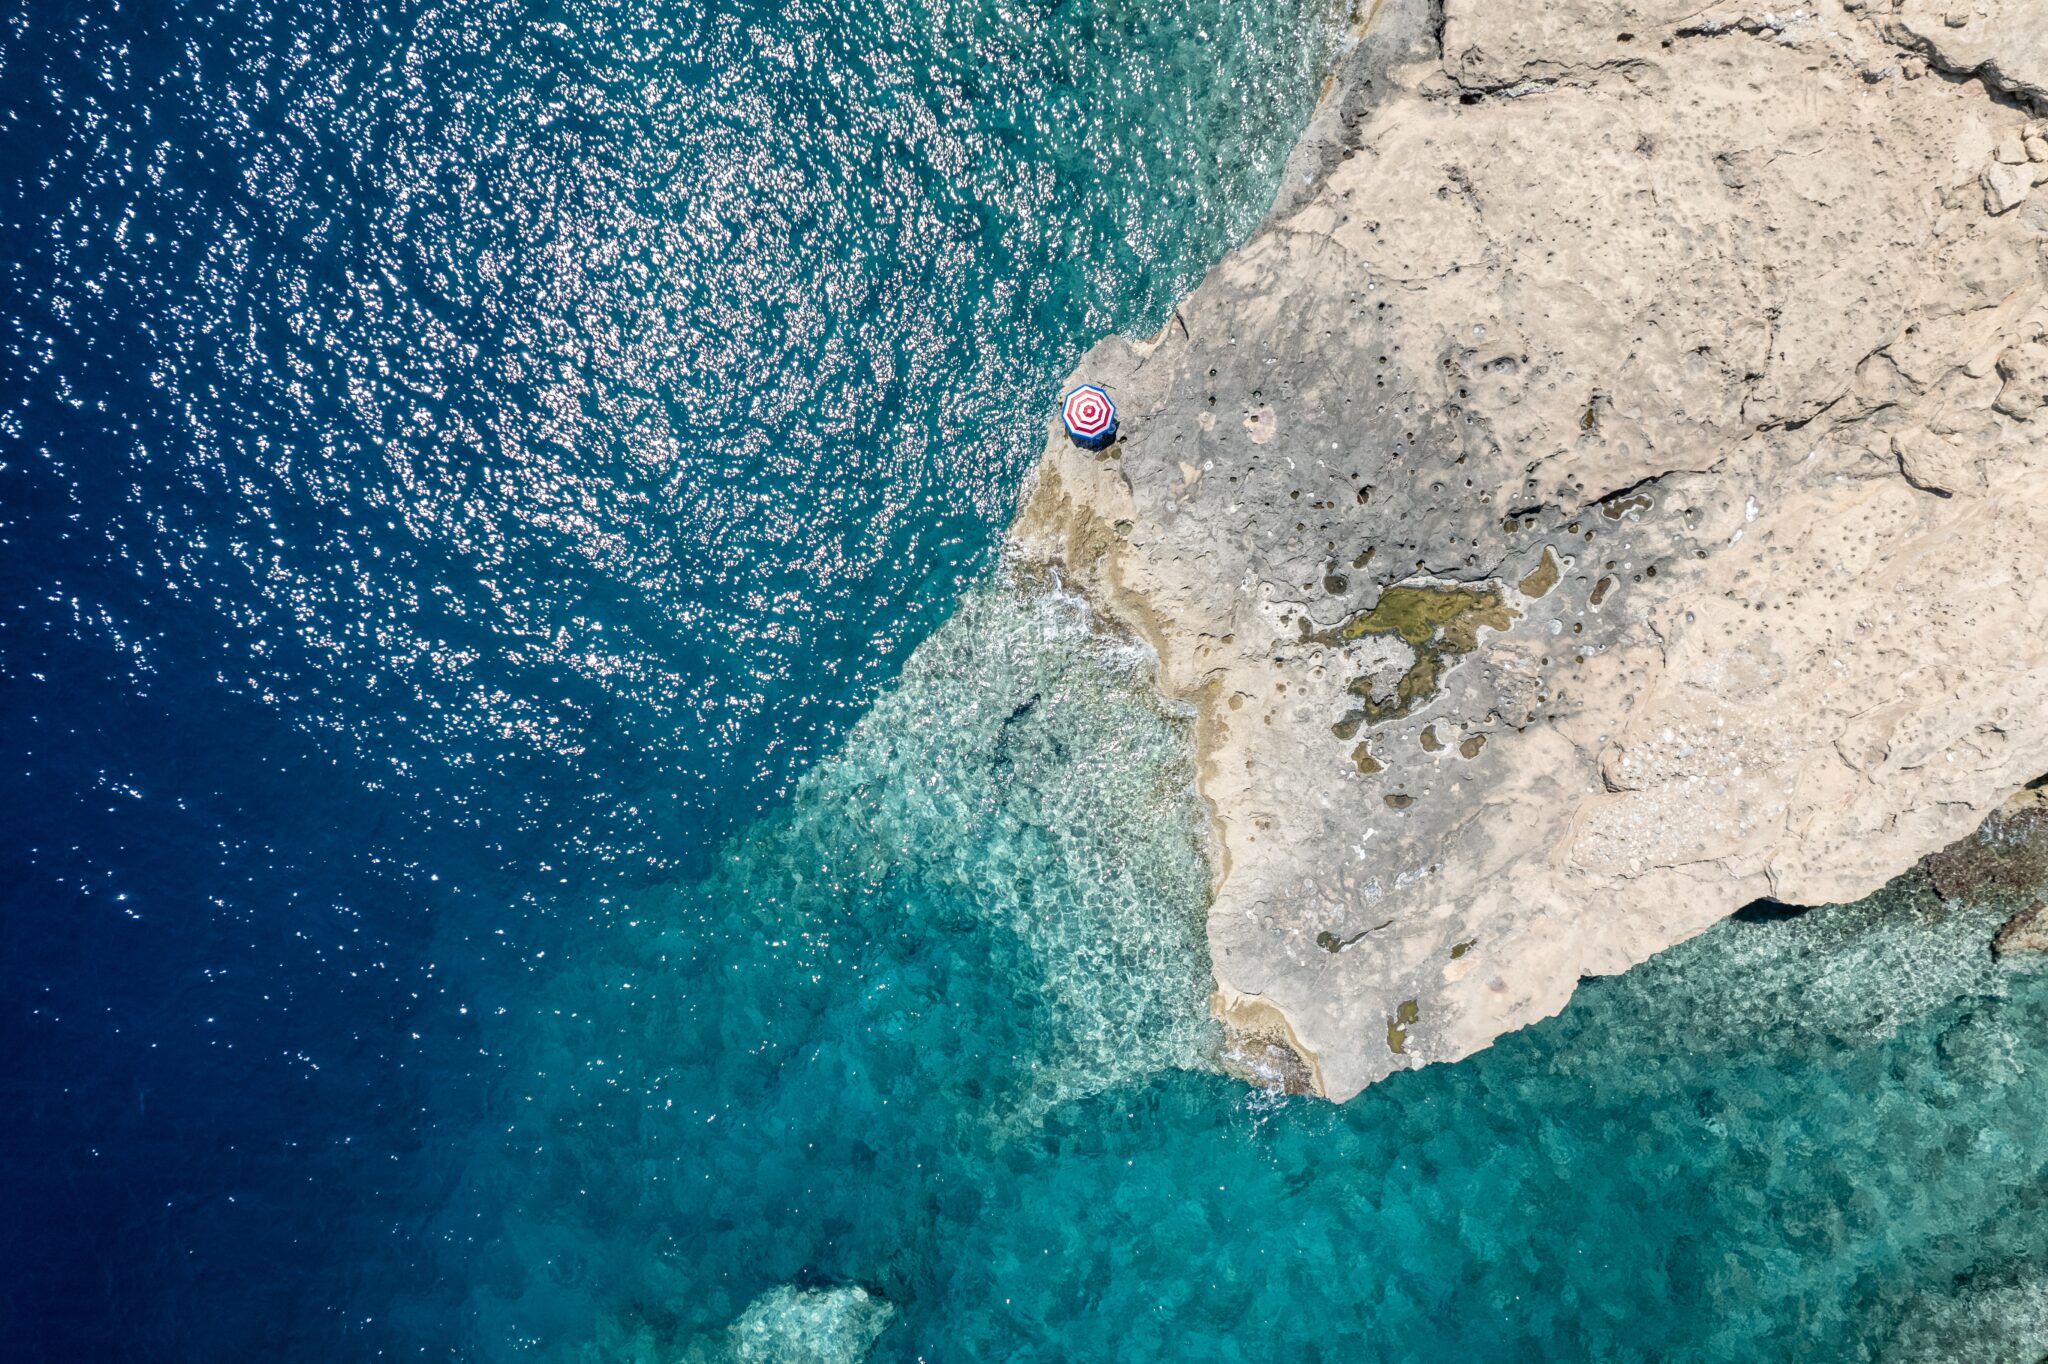 crete annual tourism